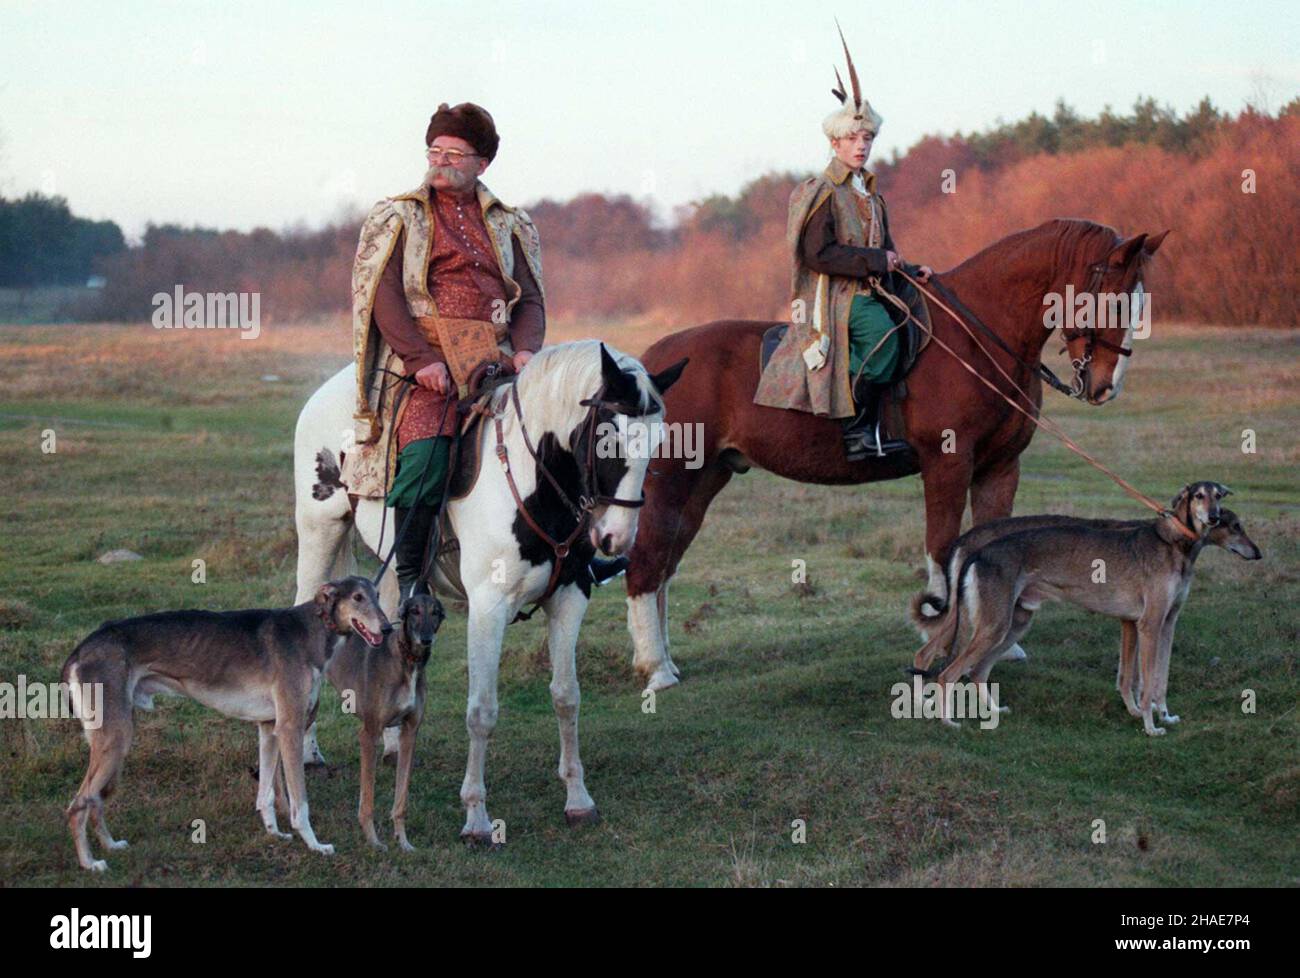 Szczypiorno, 11.11.1997. Hubertus - œwiêto myœliwych, leœnikówi jeŸdŸców. Nz. mê¿czyŸni w sarmackich strojach w czasie pokazu polowania z u¿yciem koni i psów w Szczypiornie k. Warszawy. (kru) PAP/CAF/Jacek Turczyk     Szczypiorno, 11.11.1997. Hubertus - the feast of the hunters, foresters and riders. Pictured: men wearing Sarmatian' costumes, during the show hunting with horses and dogs, in Szczypiorno near Wasraw. (kru) PAP/Jacek Turczyk Stock Photo